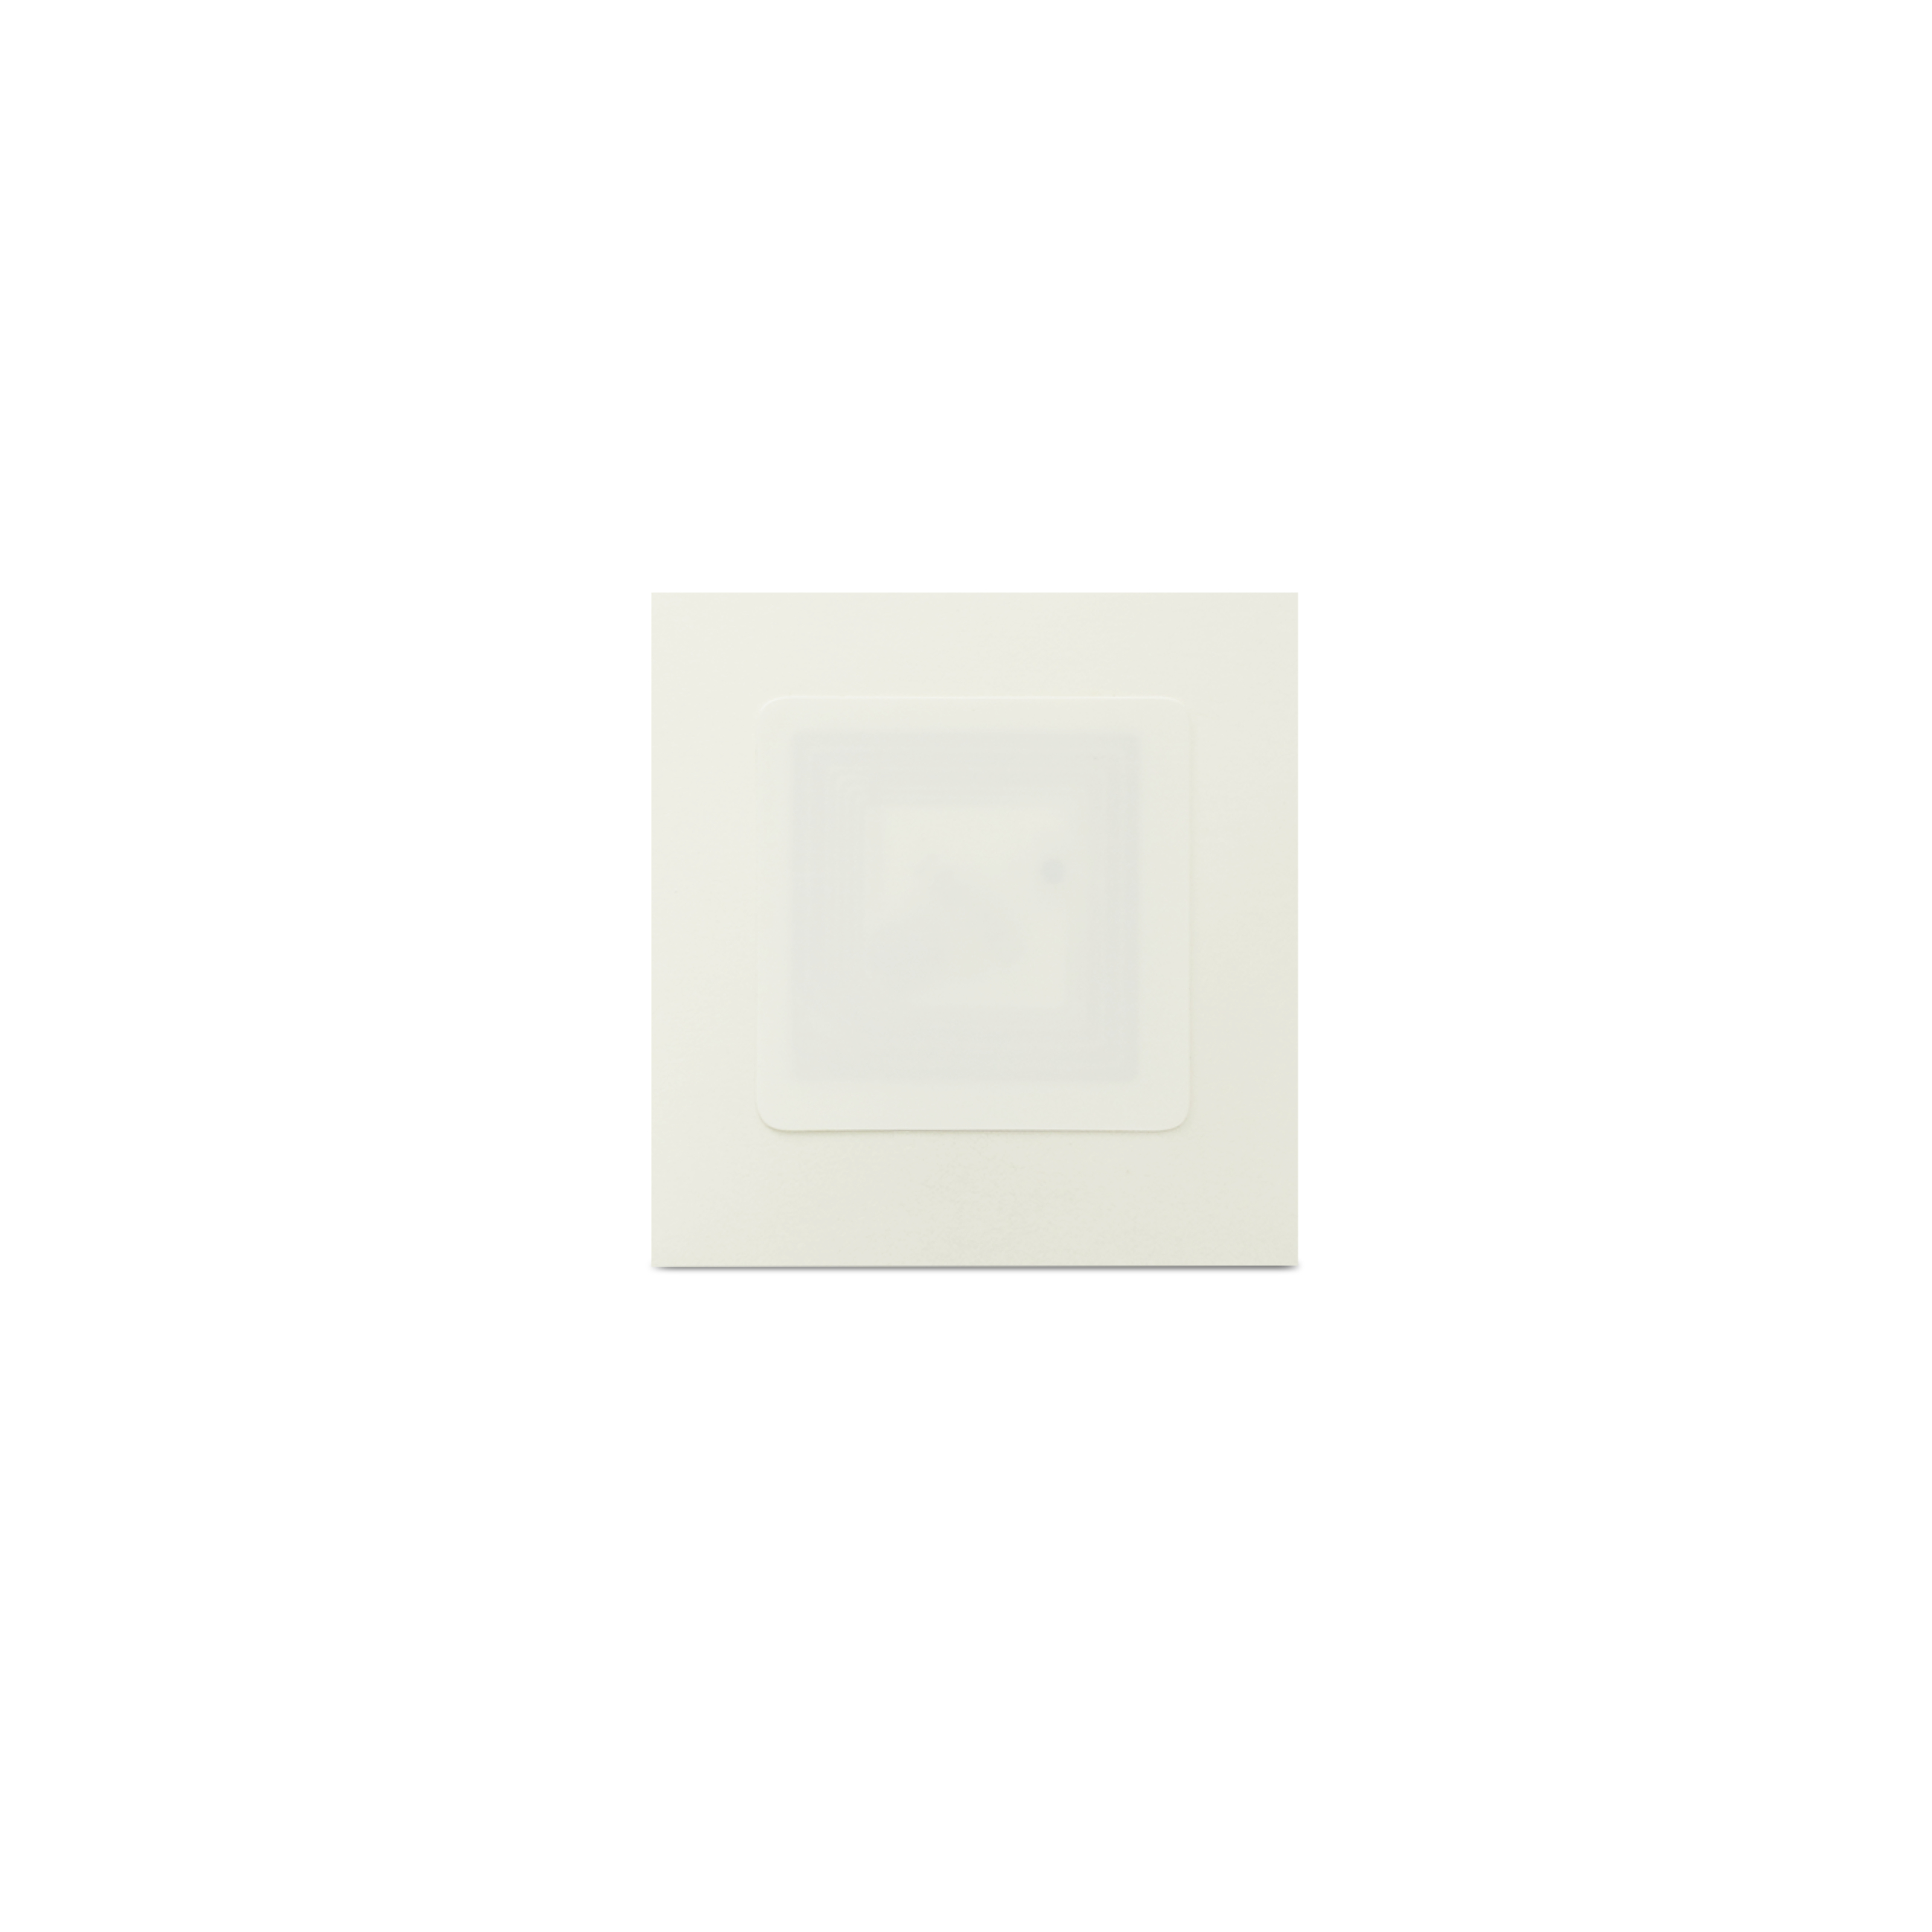 NFC Sticker PET - 18 x 18 mm - NTAG213 - 180 Byte - rechteckig - weiß